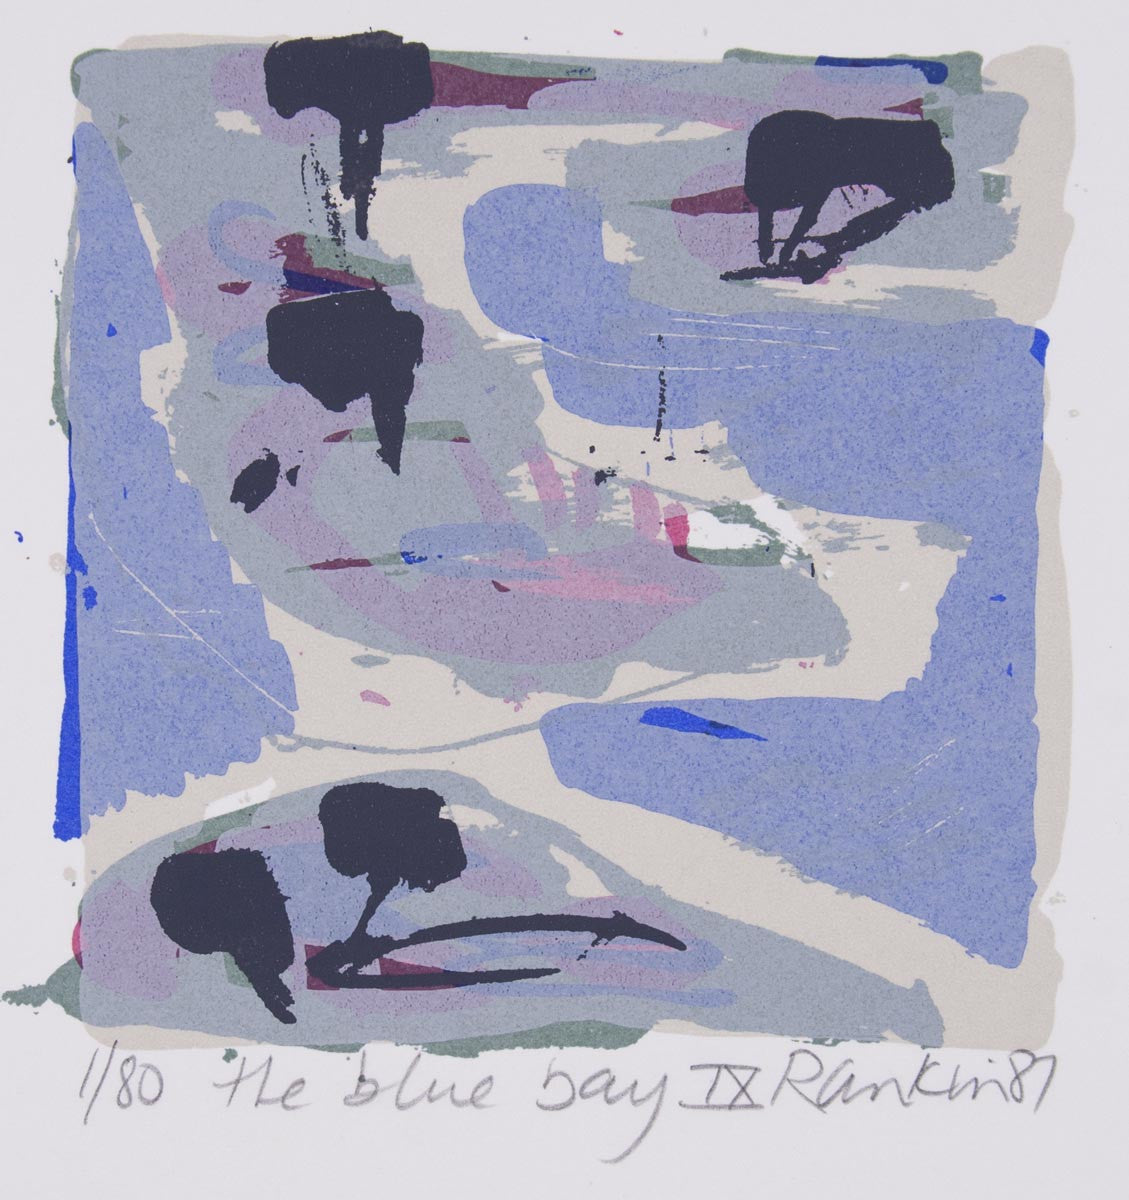 David Rankin 'The Blue Bay IX' - screenprint on paper